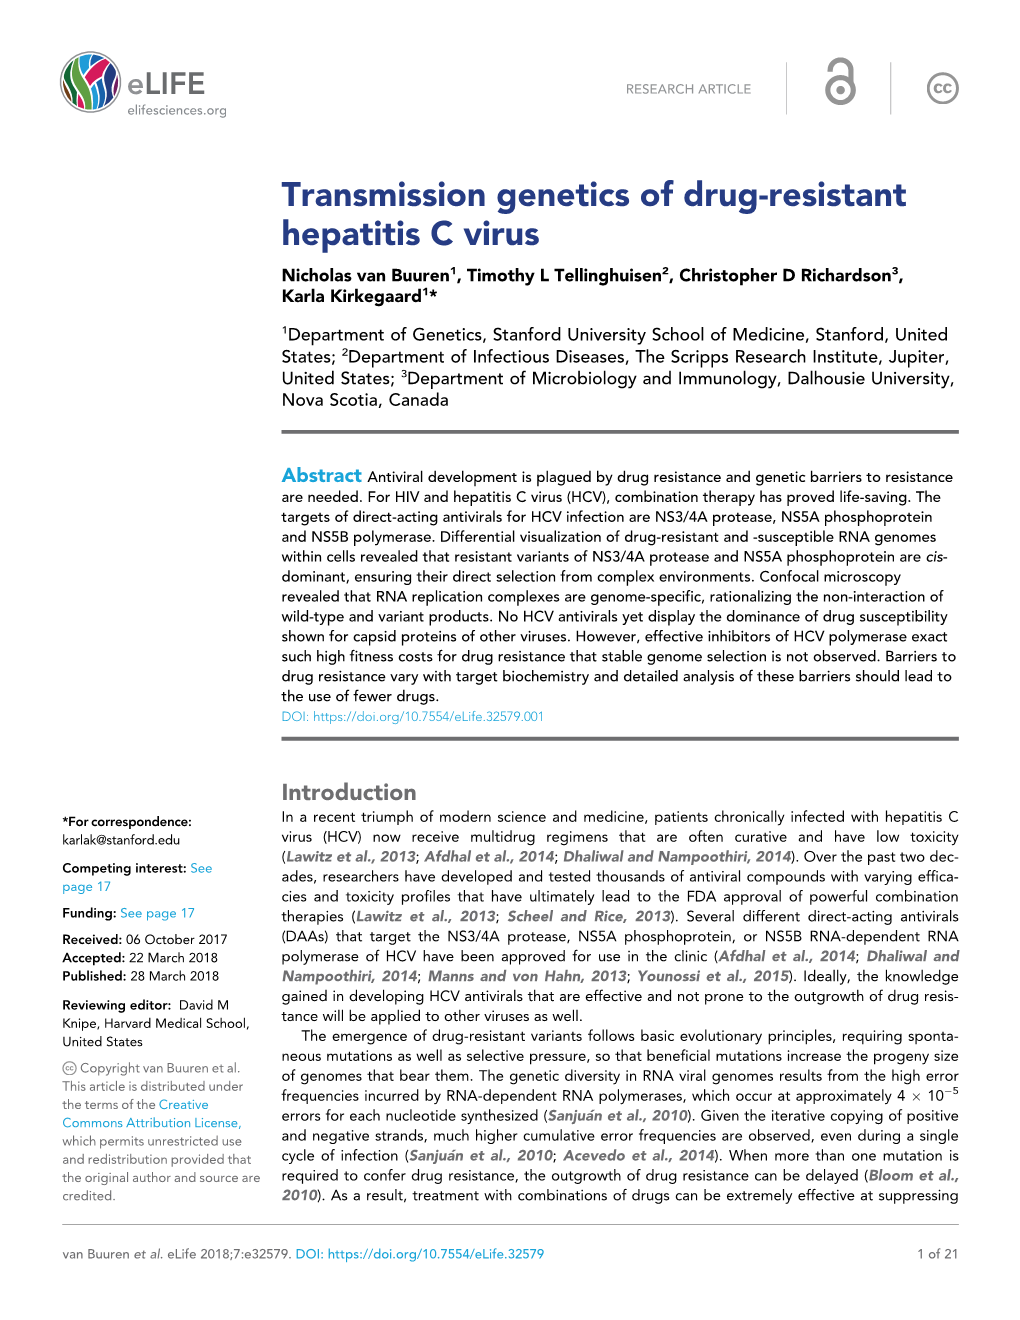 Transmission Genetics of Drug-Resistant Hepatitis C Virus Nicholas Van Buuren1, Timothy L Tellinghuisen2, Christopher D Richardson3, Karla Kirkegaard1*